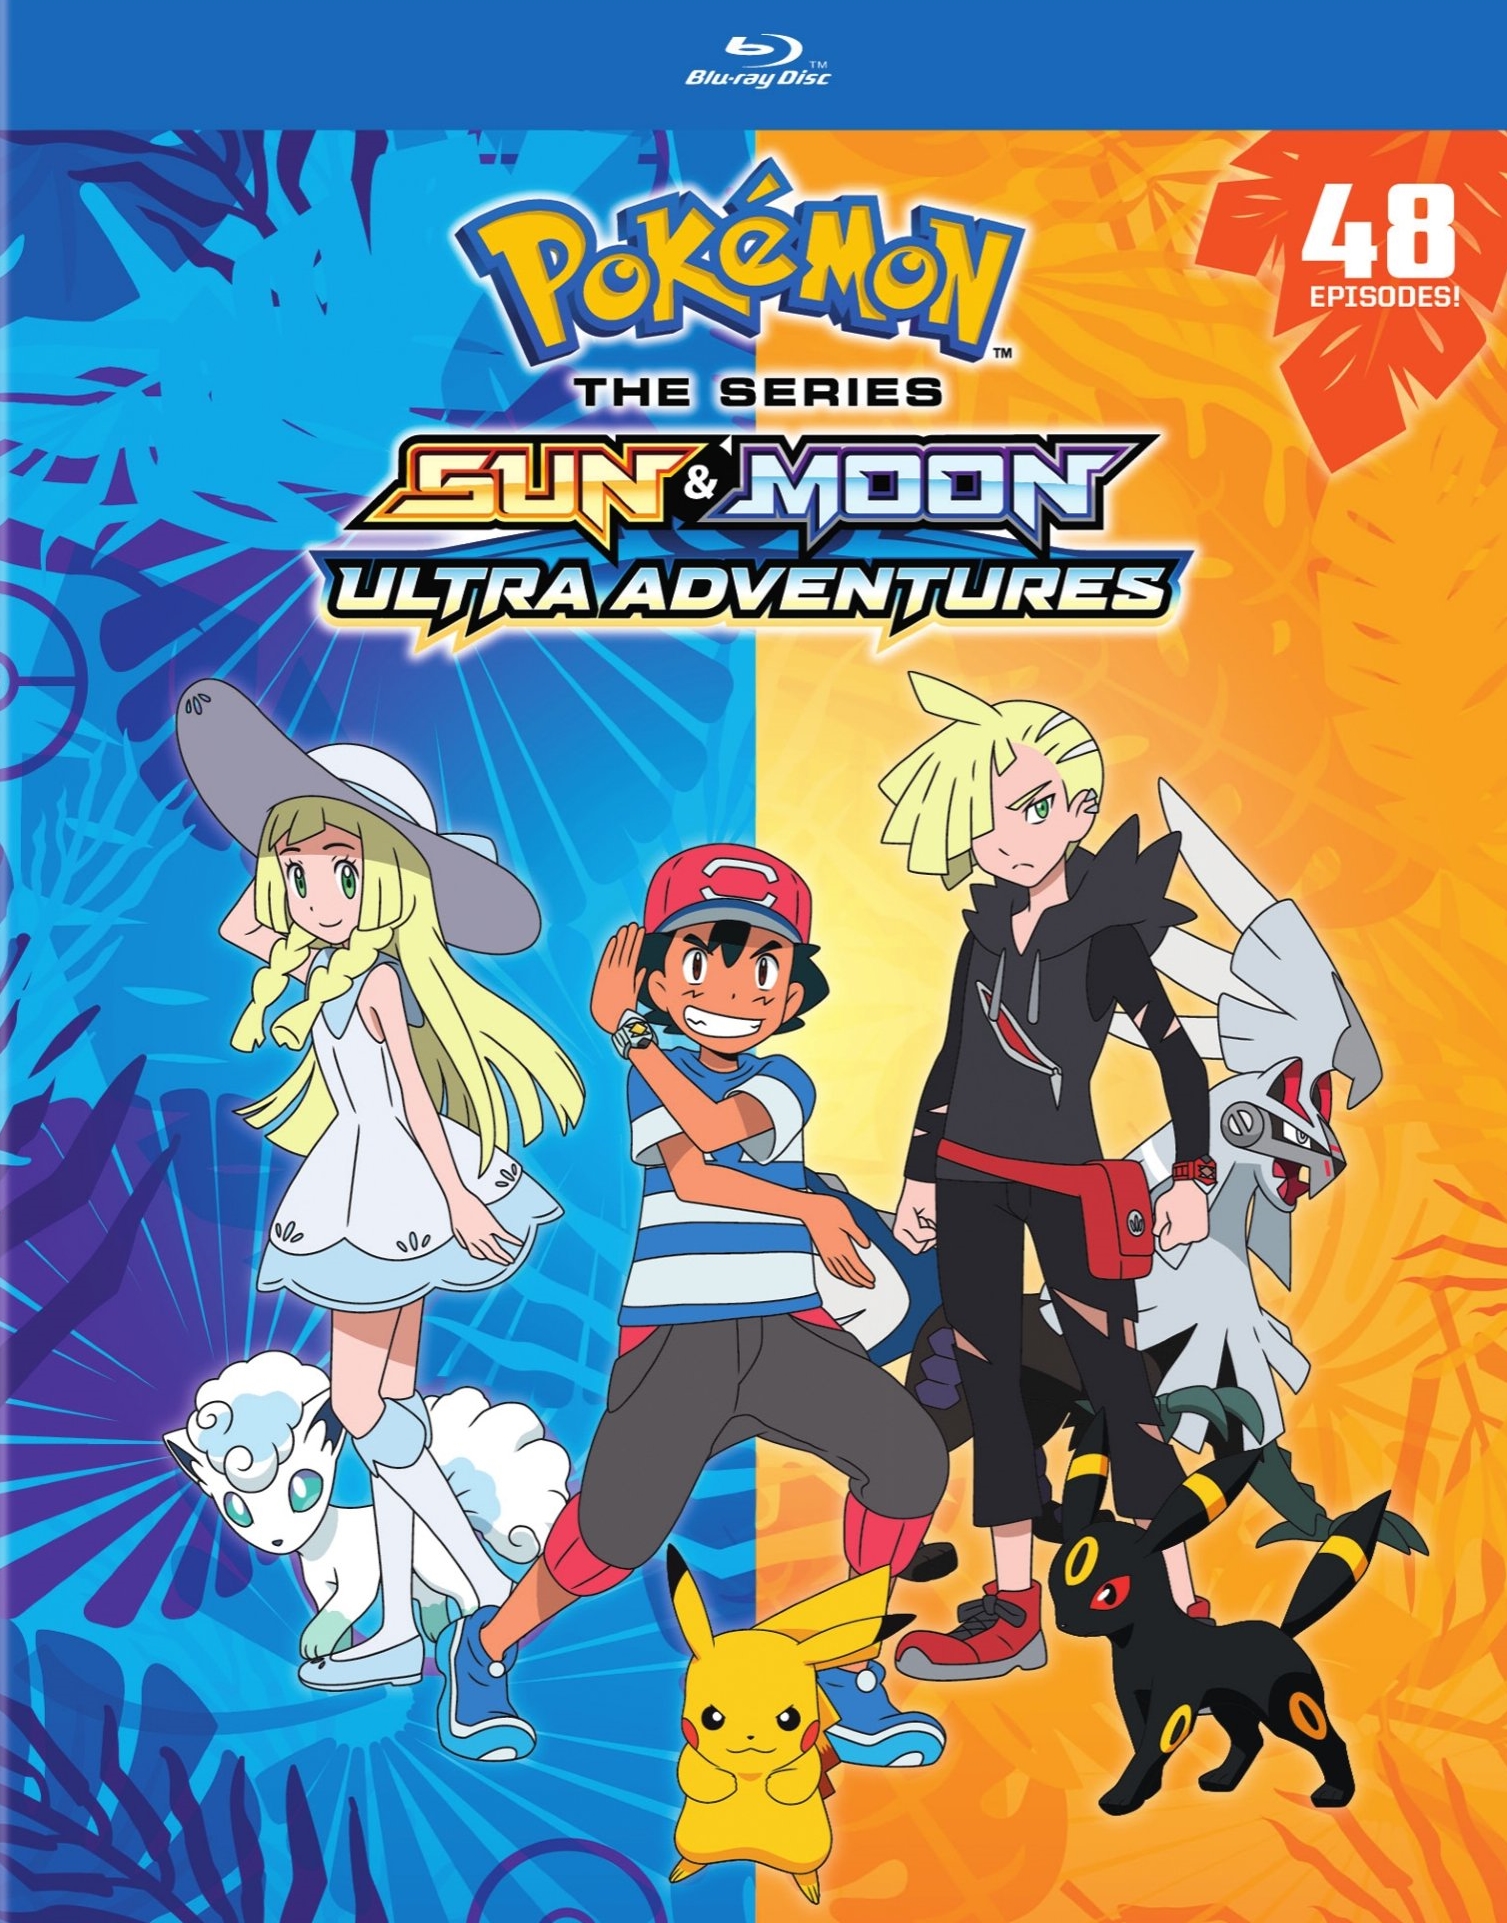 Pokémon Ultra Sun & Pokémon Ultra Moon